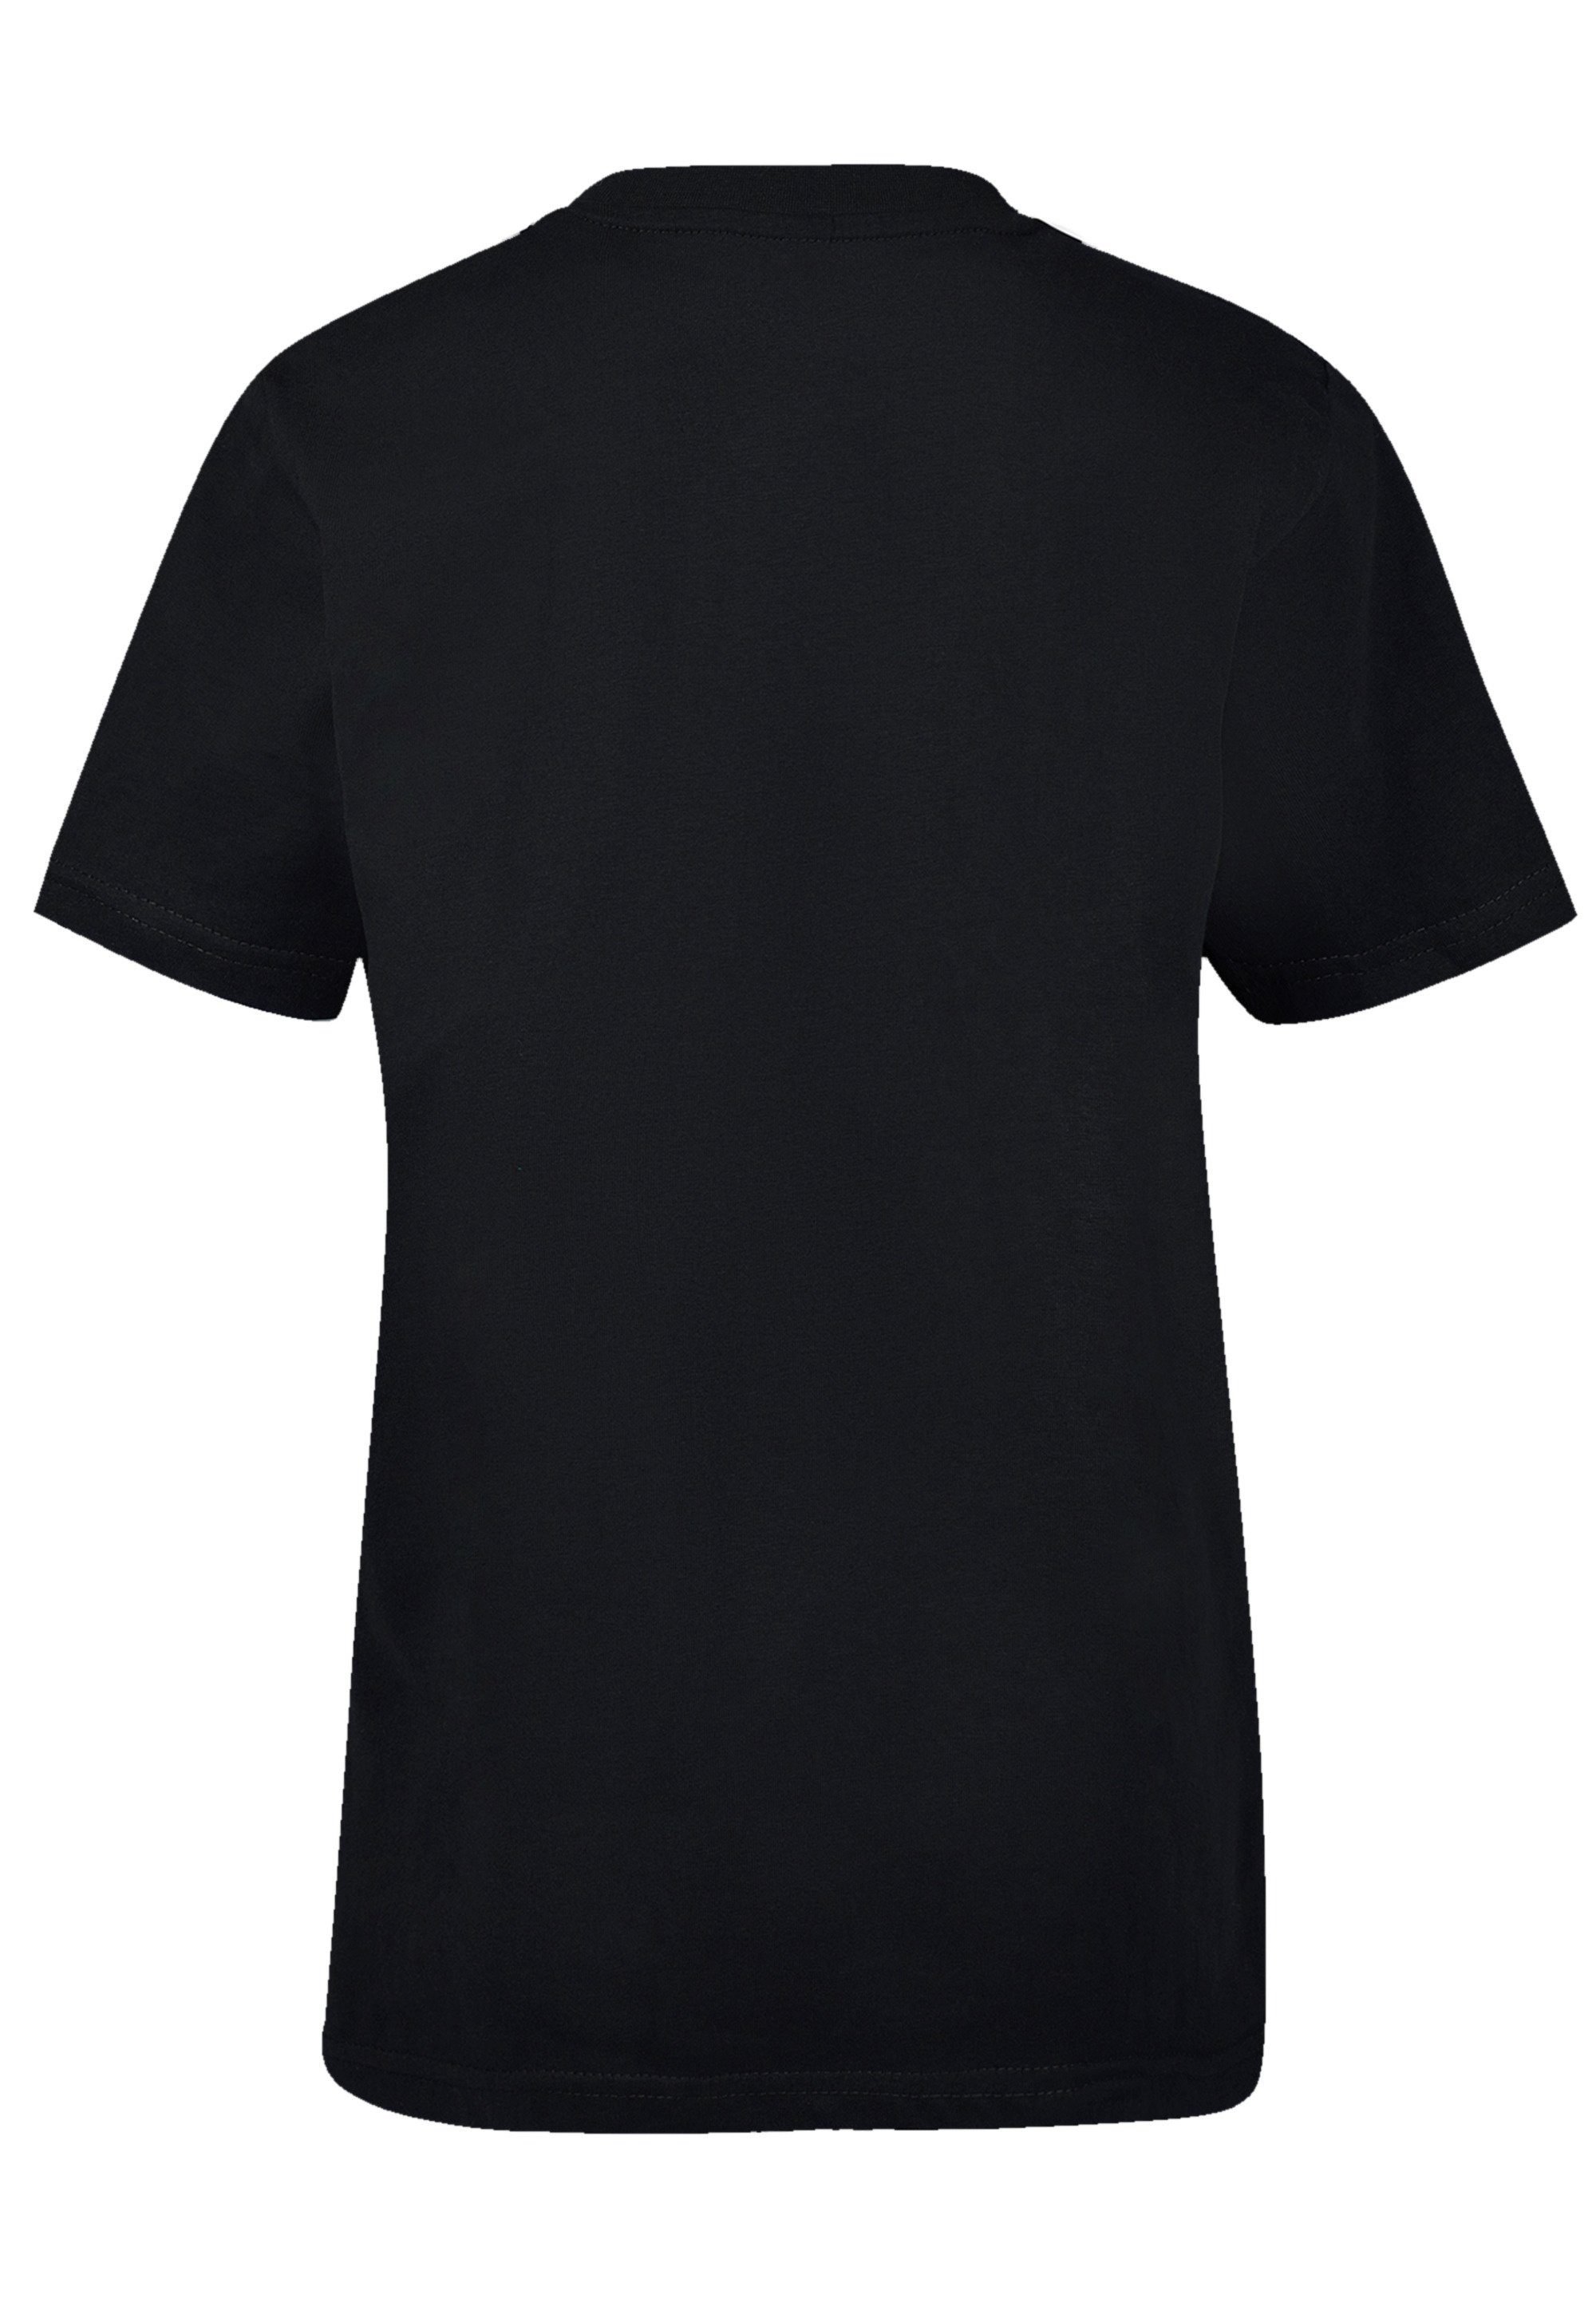 Schlittenfahren T-Shirt schwarz Logo Geschenk, Christmas Weihnachten, Weihnachten F4NT4STIC